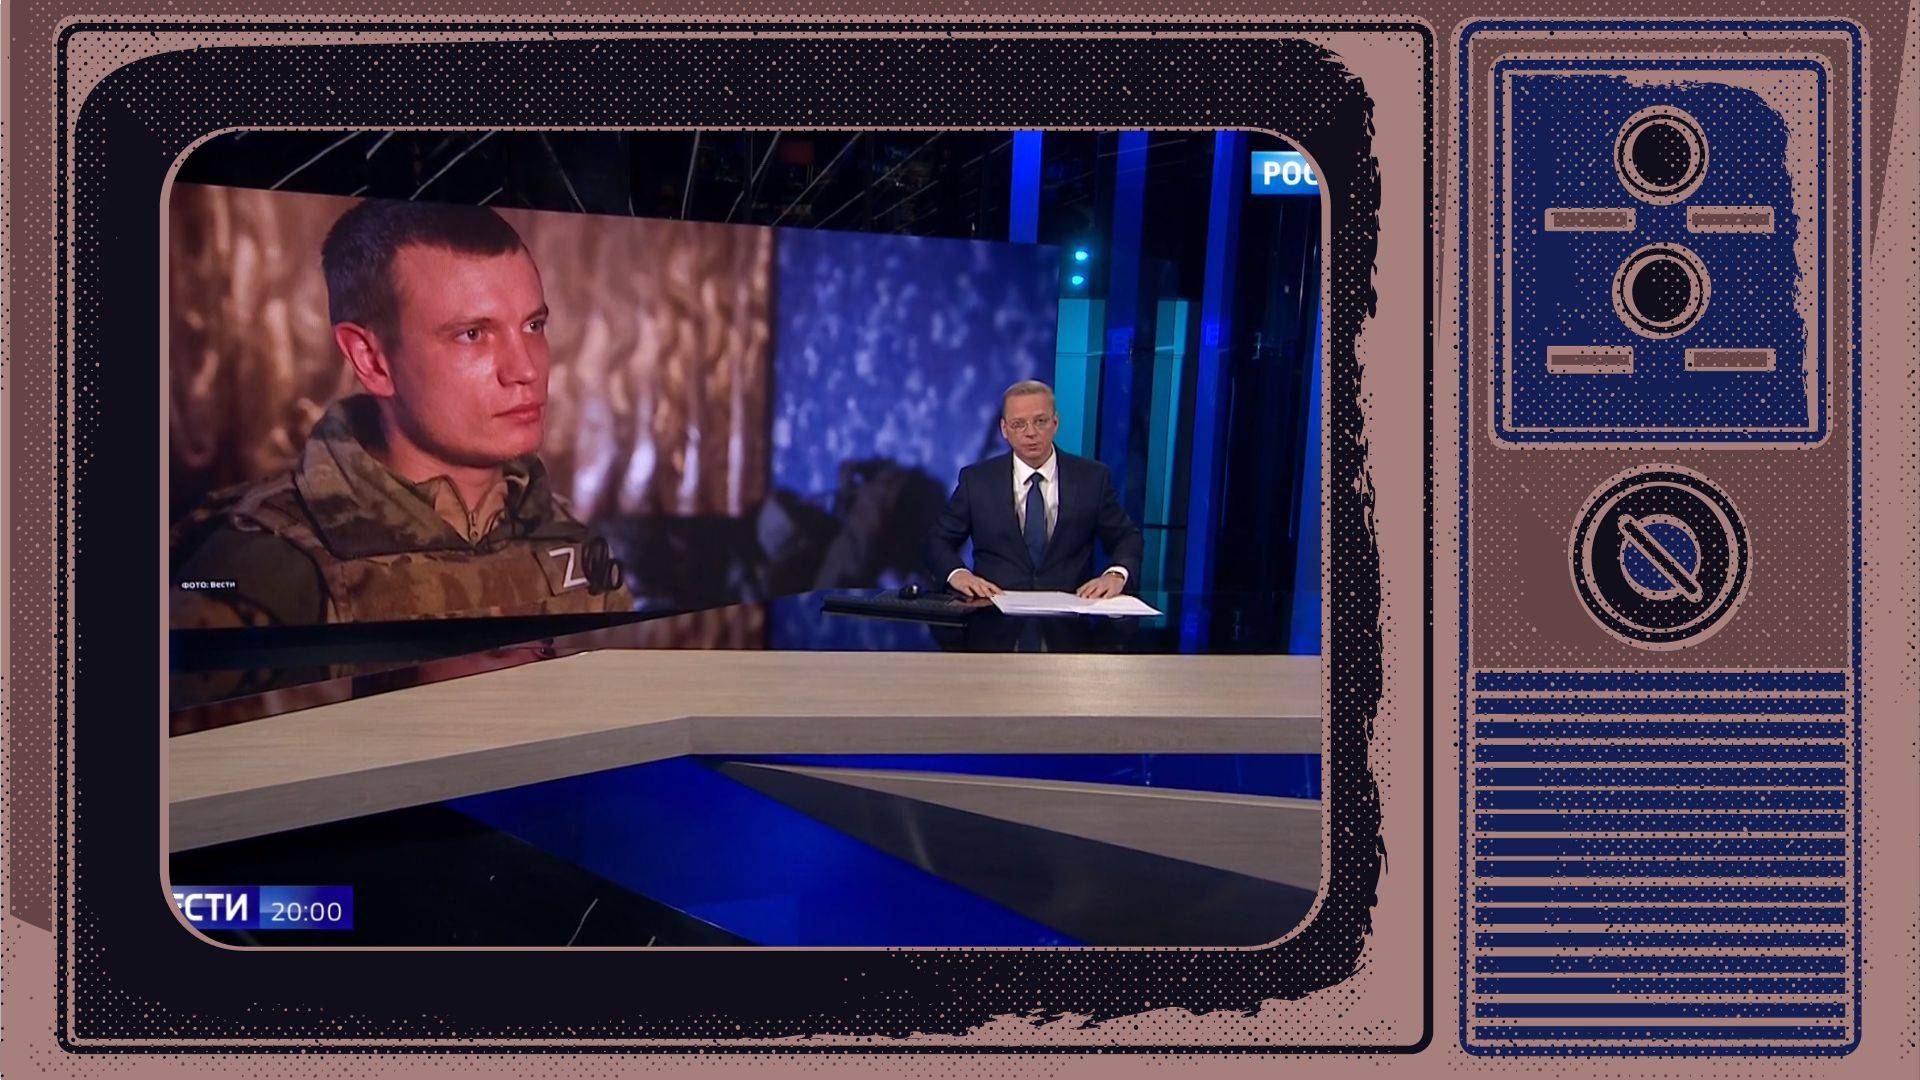 Grafika: w ramce starego telewizora studio telewizyjne, w którym prezenter pokazuje na ekranie zdjęcie młodego wojskowego